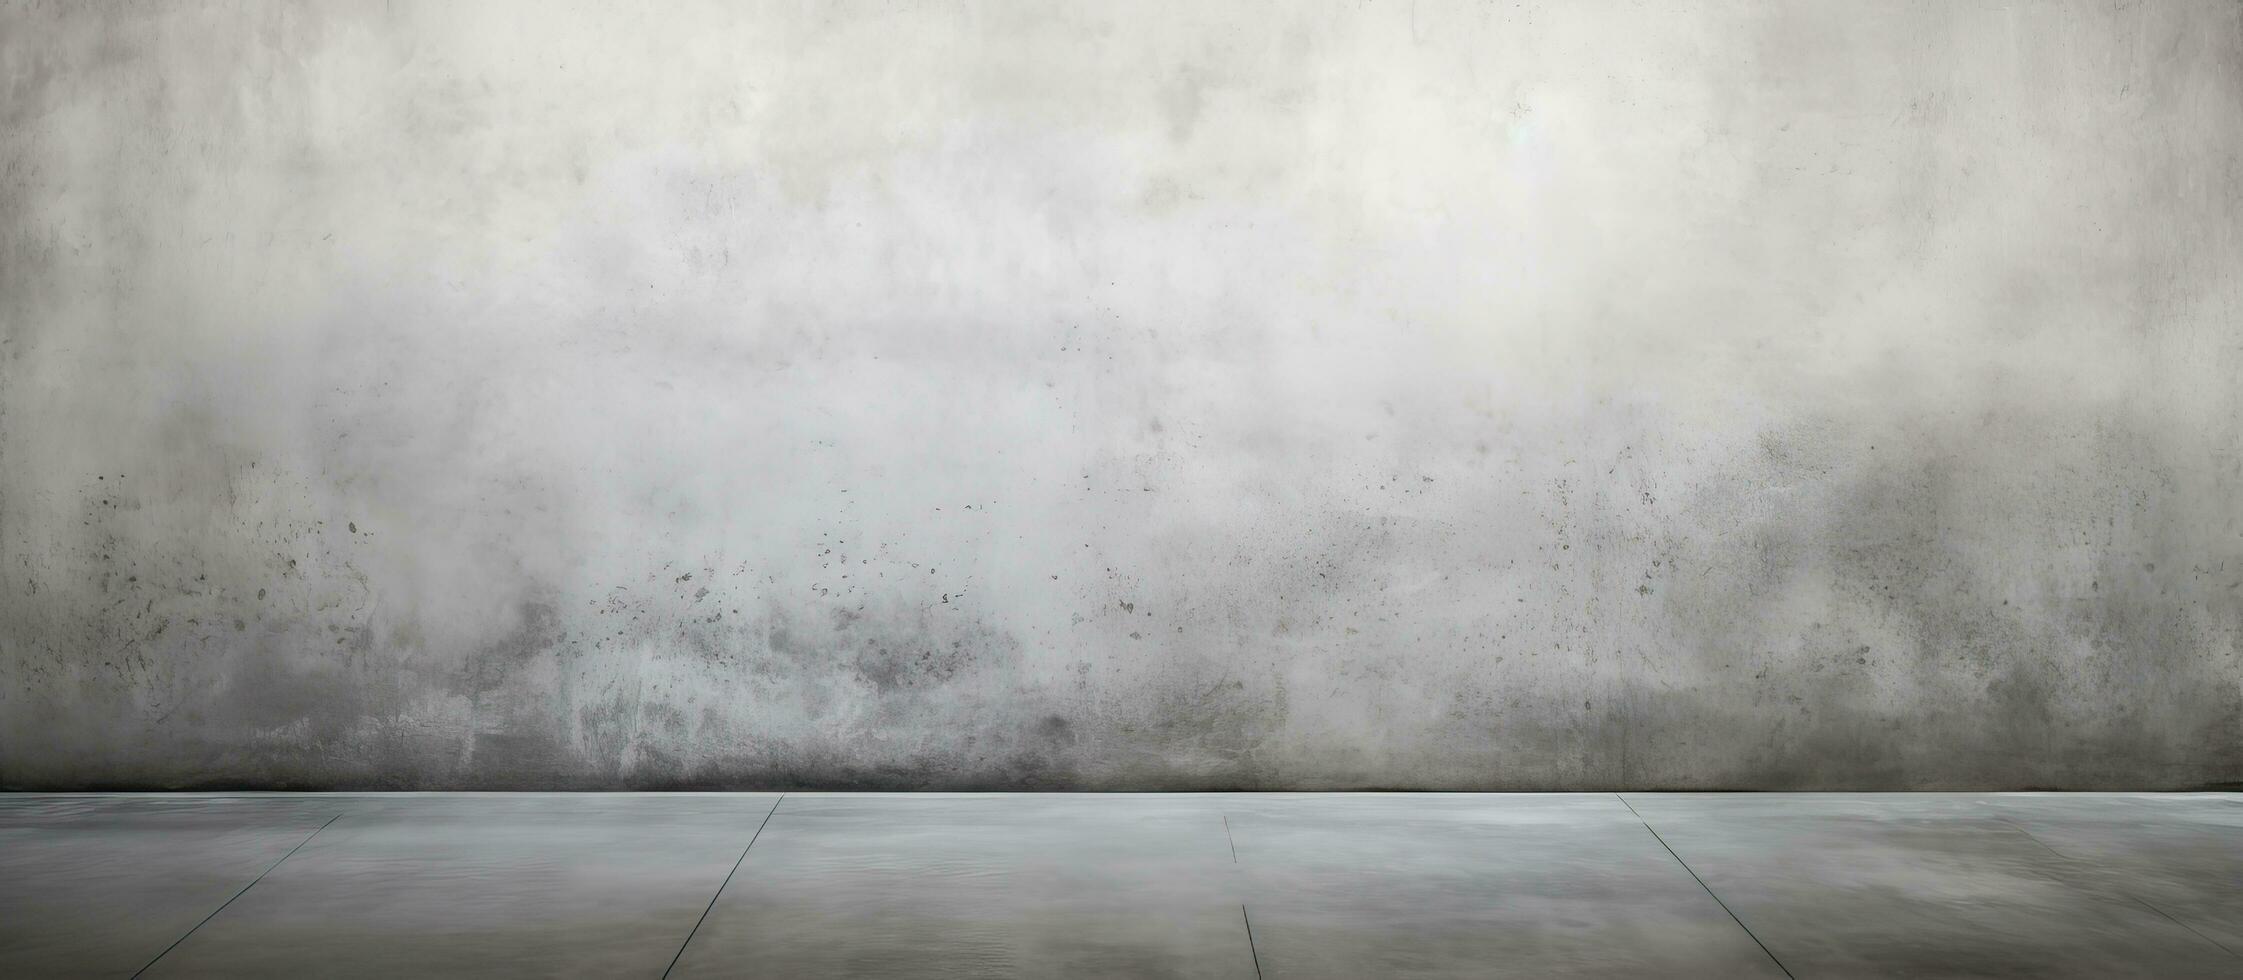 bakgrund av en cement golv med en polerad betong textur visas smutsig och suddigt foto